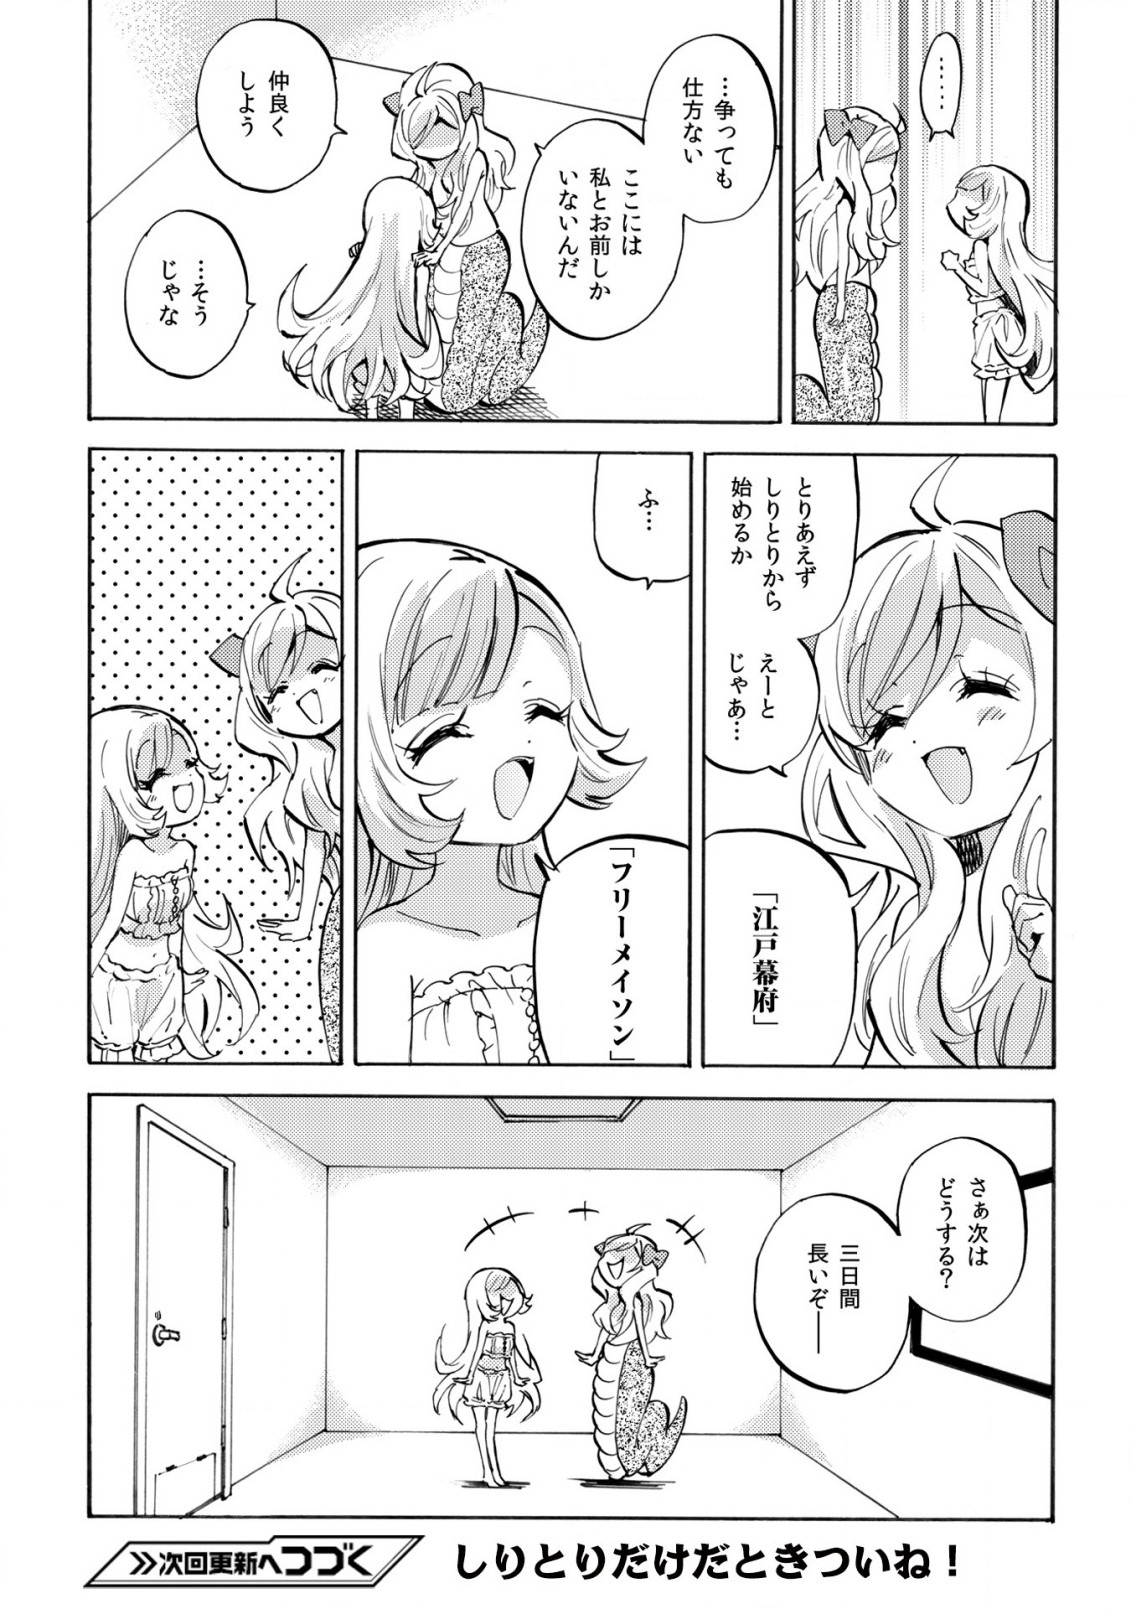 Jashin-chan Dropkick - Chapter 233 - Page 9